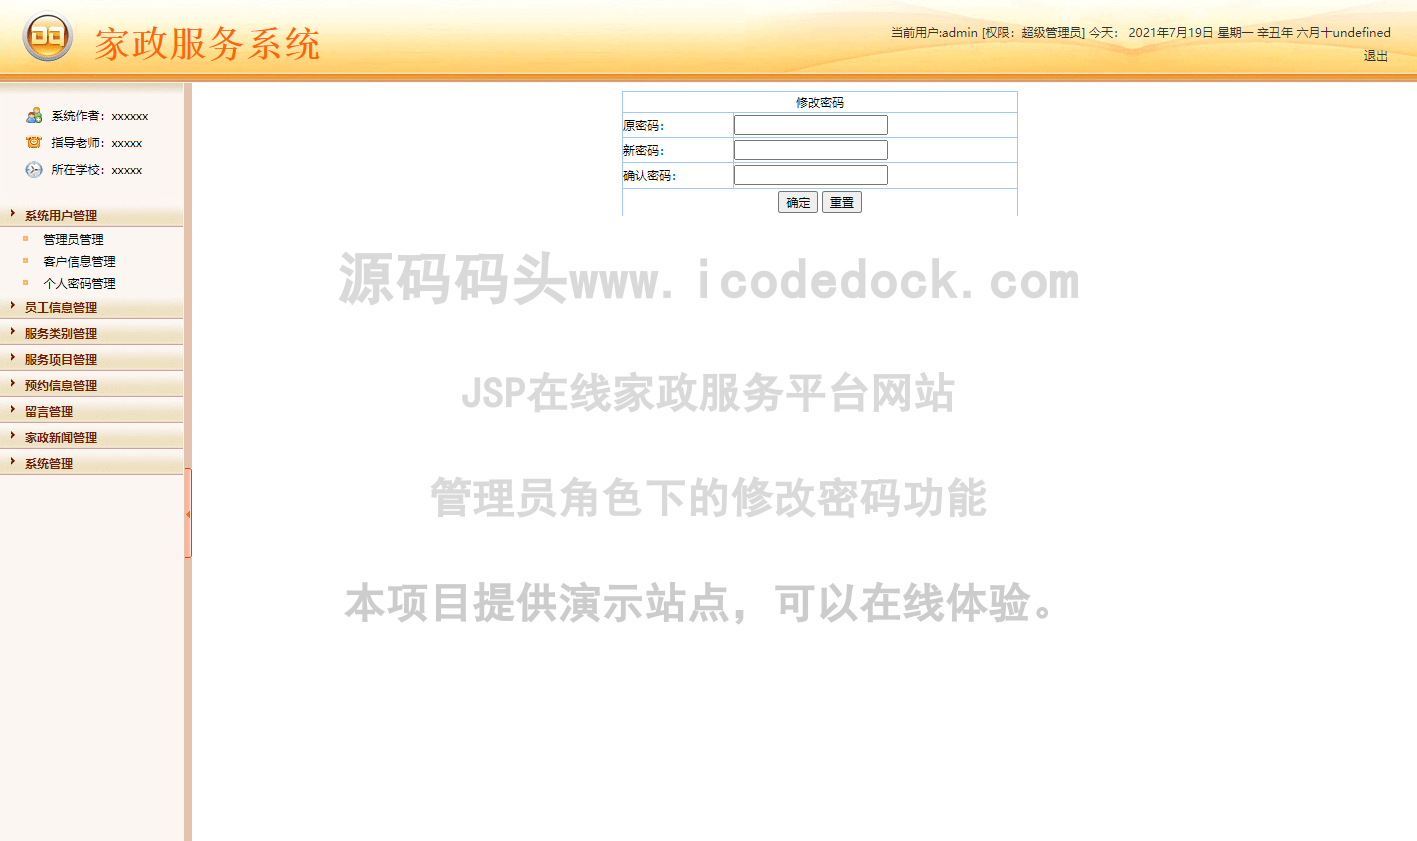 源码码头-JSP在线家政服务平台网站-管理员角色-修改密码